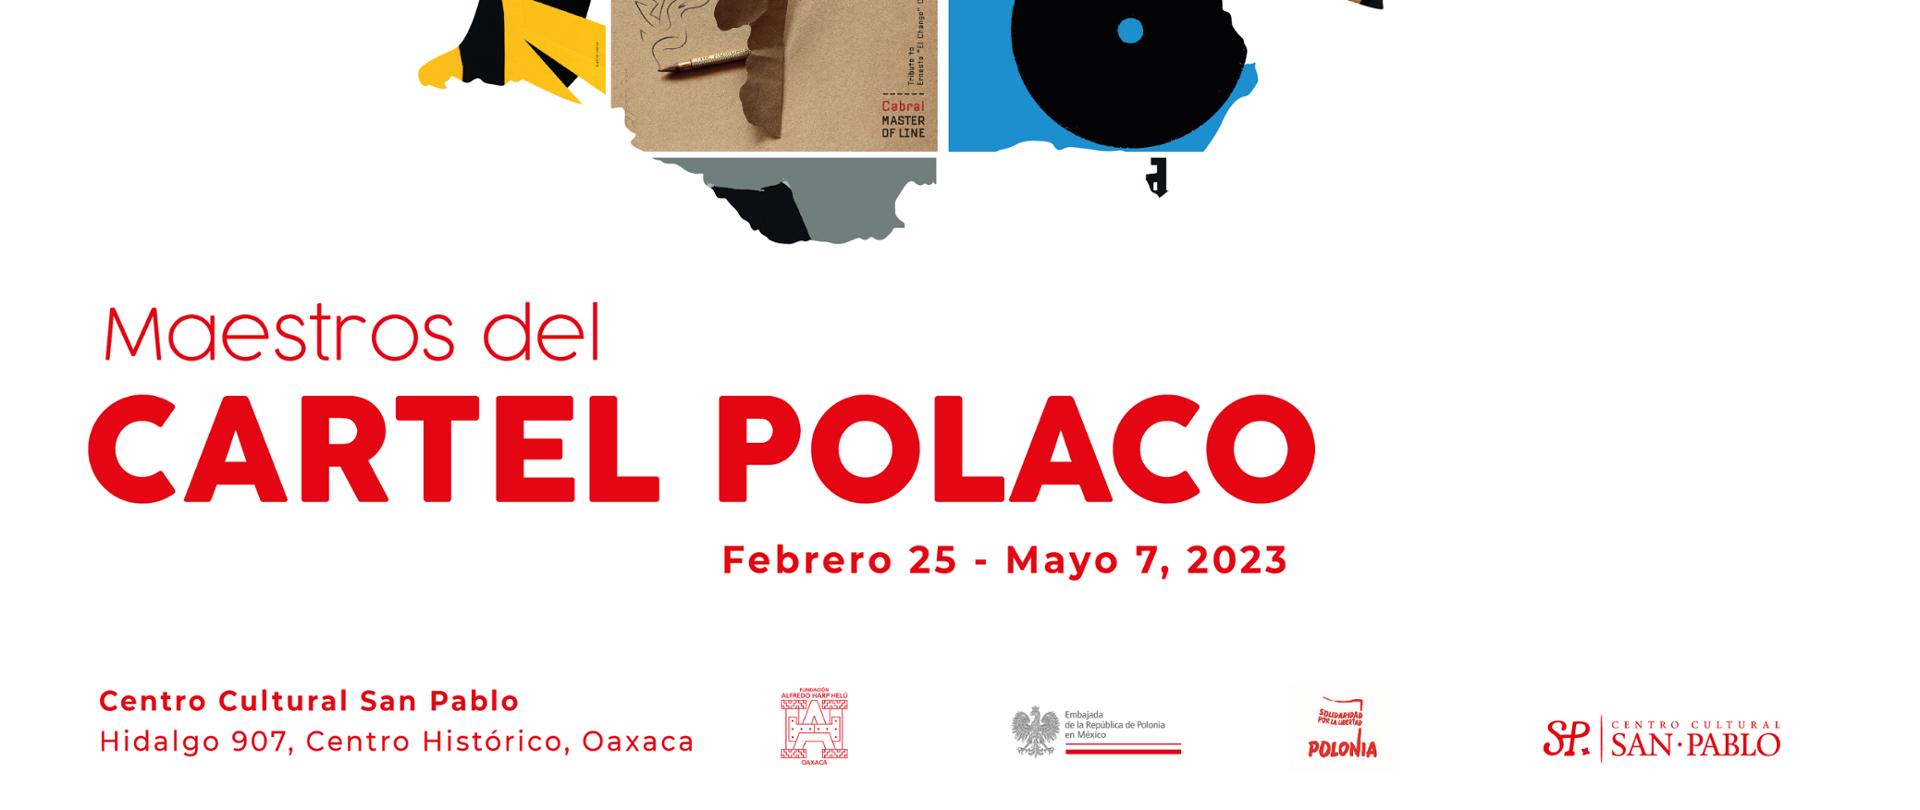 Cartel polaco en Oaxaca